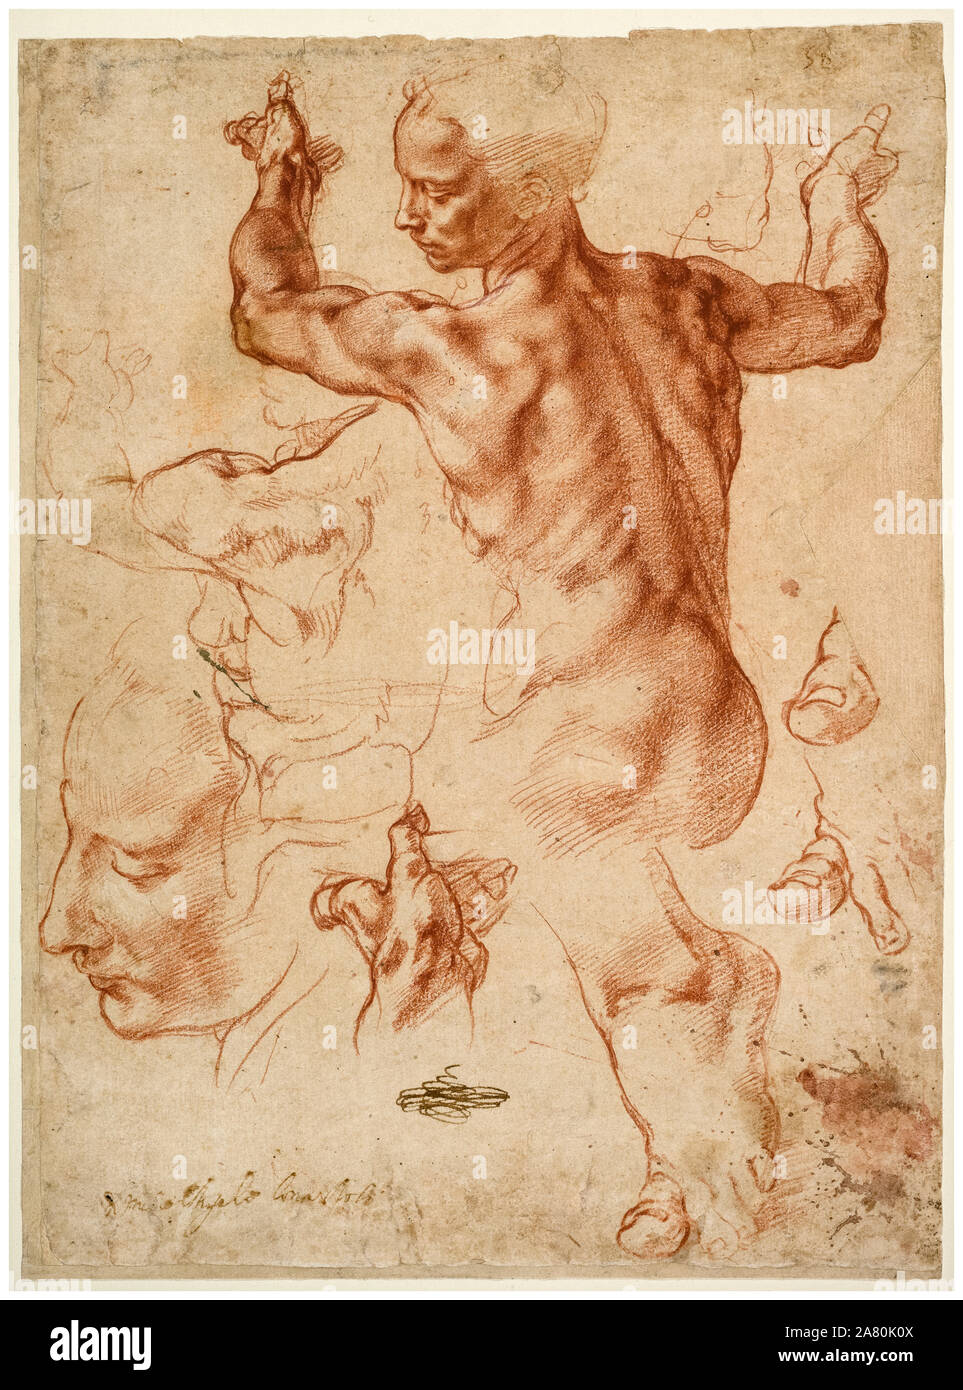 Michelangelo Buonarroti, Studien für Guernica, Zeichnung, ca. 1510 Stockfoto